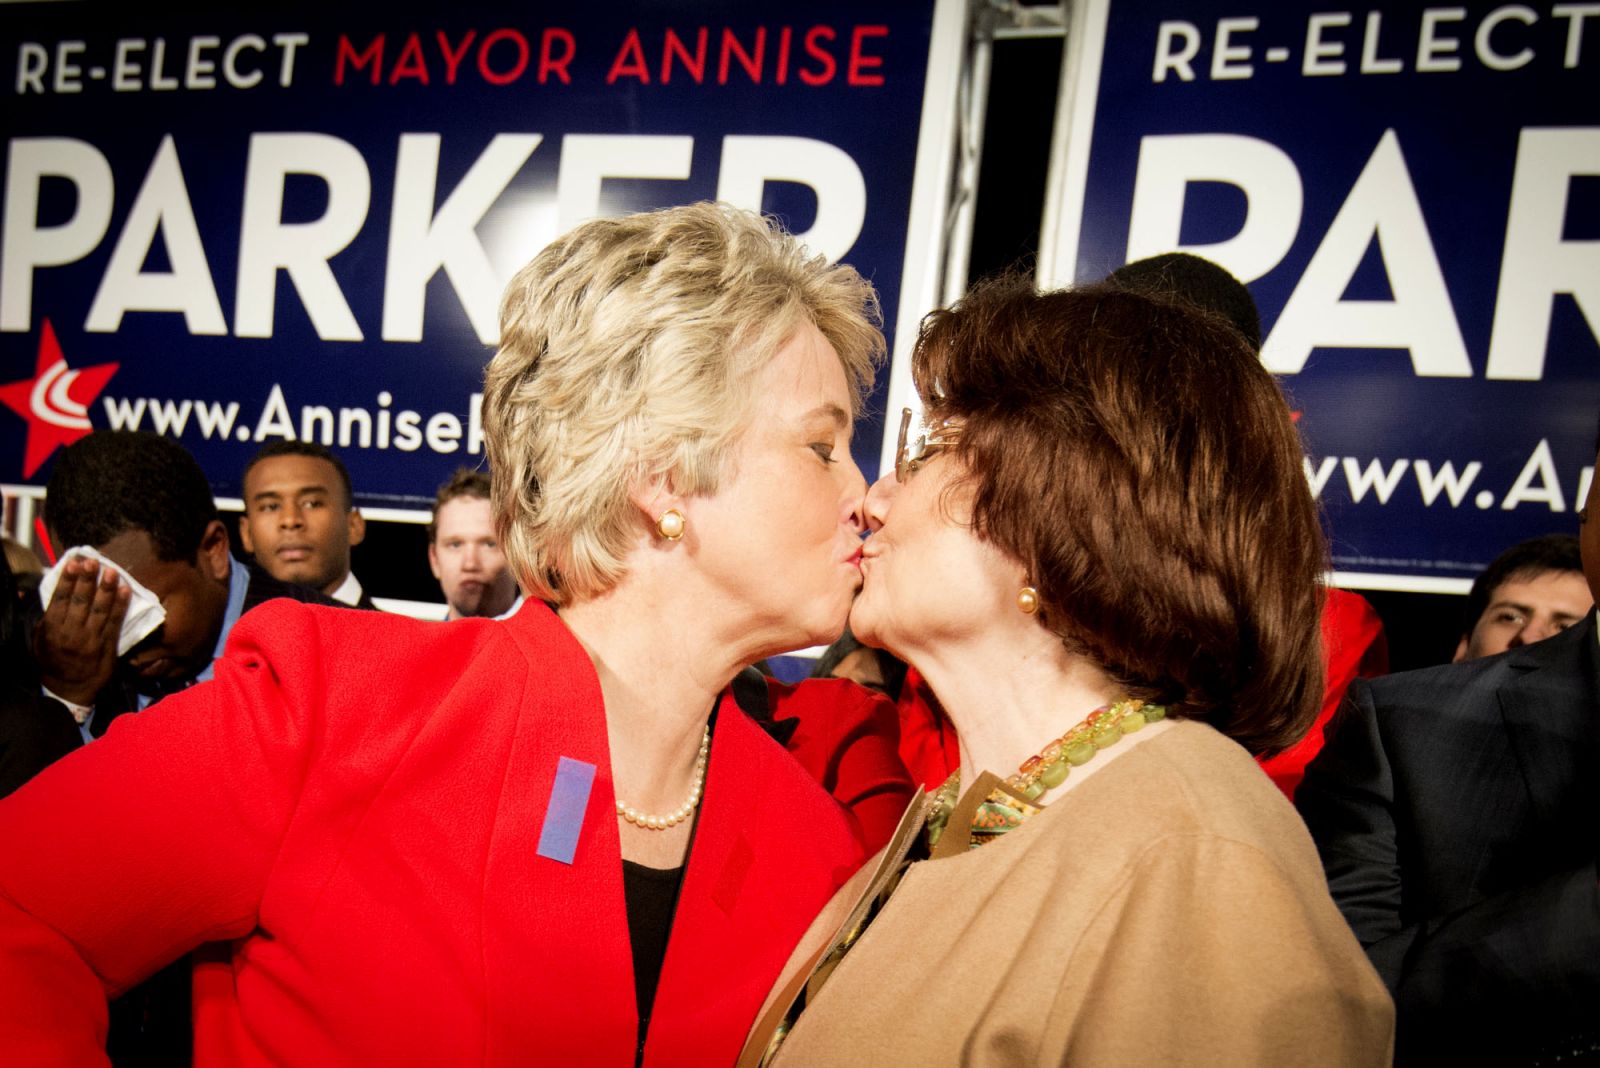 Đó là người đầu tiên bầu chọn một thị trưởng công khai đồng tính